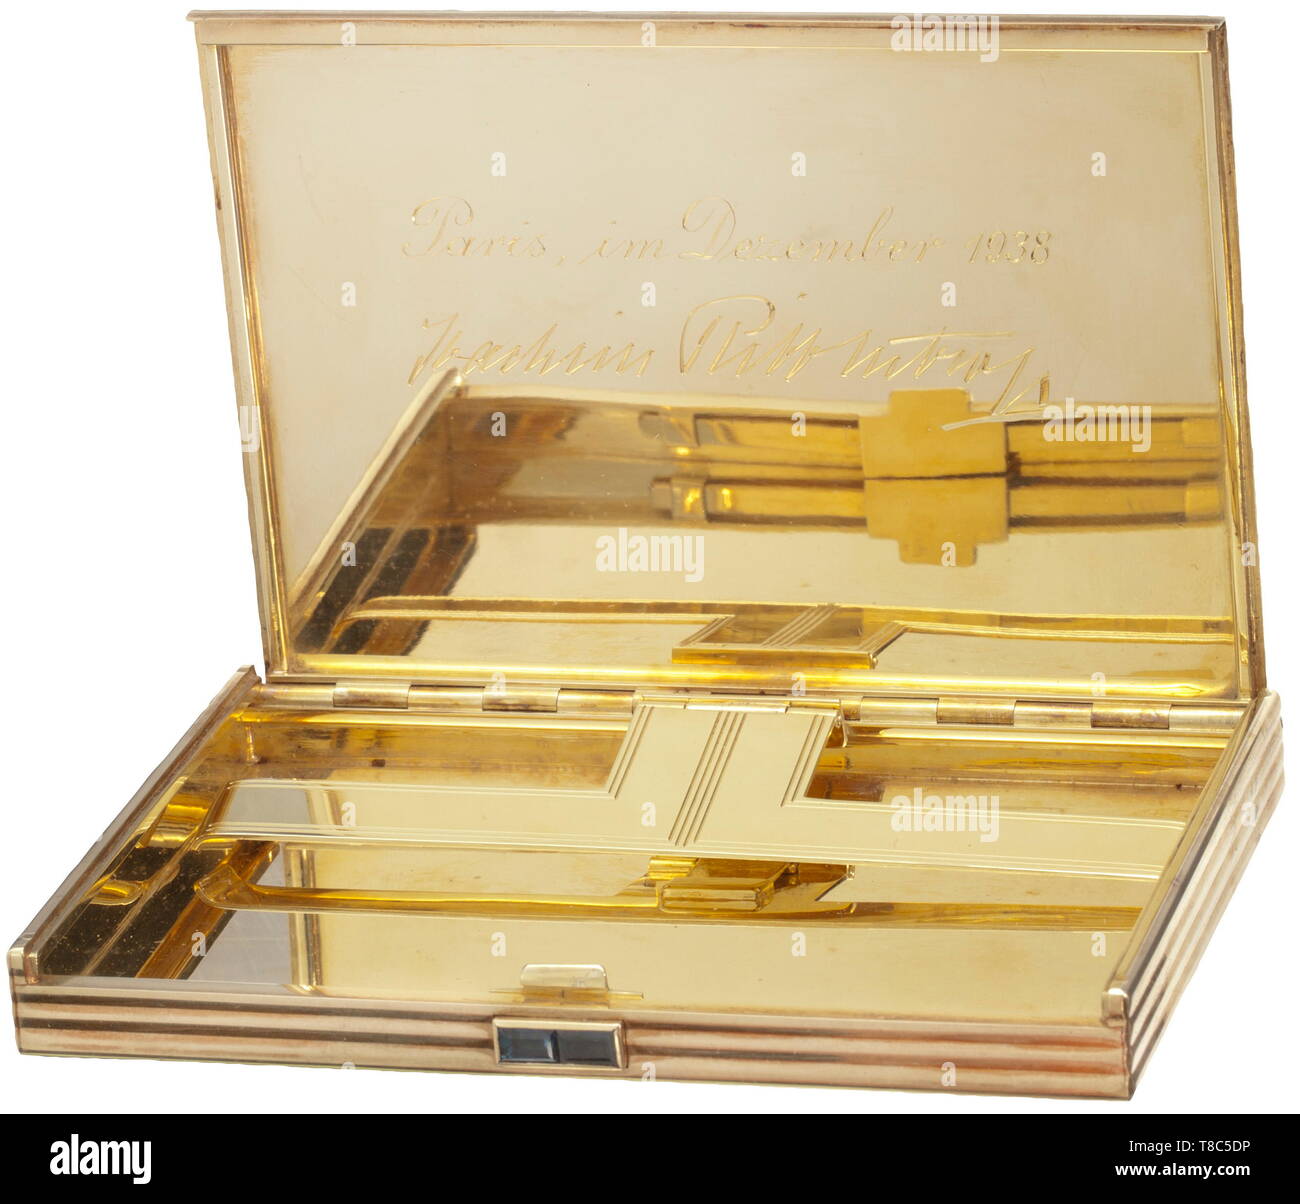 Joachim von Ribbentrop - eine goldene Zigarette, ein Geschenk der französischen Directeur des Renseignements généraux de La Préfecture de Police, Dezember 1938 Juwelier H.J. Wilm, Berlin. 585 Gold, aussen mit feinen, geometrisch Rippenstruktur, die Schließung mit Saphiren. Markenzeichen. In den Deckel der eingravierten Widmung' Paris, im März 1938 - Joachim Ribbentrop', federbelasteten Zigarettenspitze. 11,8 x 7,8 x 0,8 cm, Gewicht 283 g. In dunklem Rot original Ledertasche mit dekorativen Gold Line, dunkel Rot Samt und Seide gefüttert, im Deckel der gold Juwel, Additional-Rights - Clearance-Info - Not-Available Stockfoto